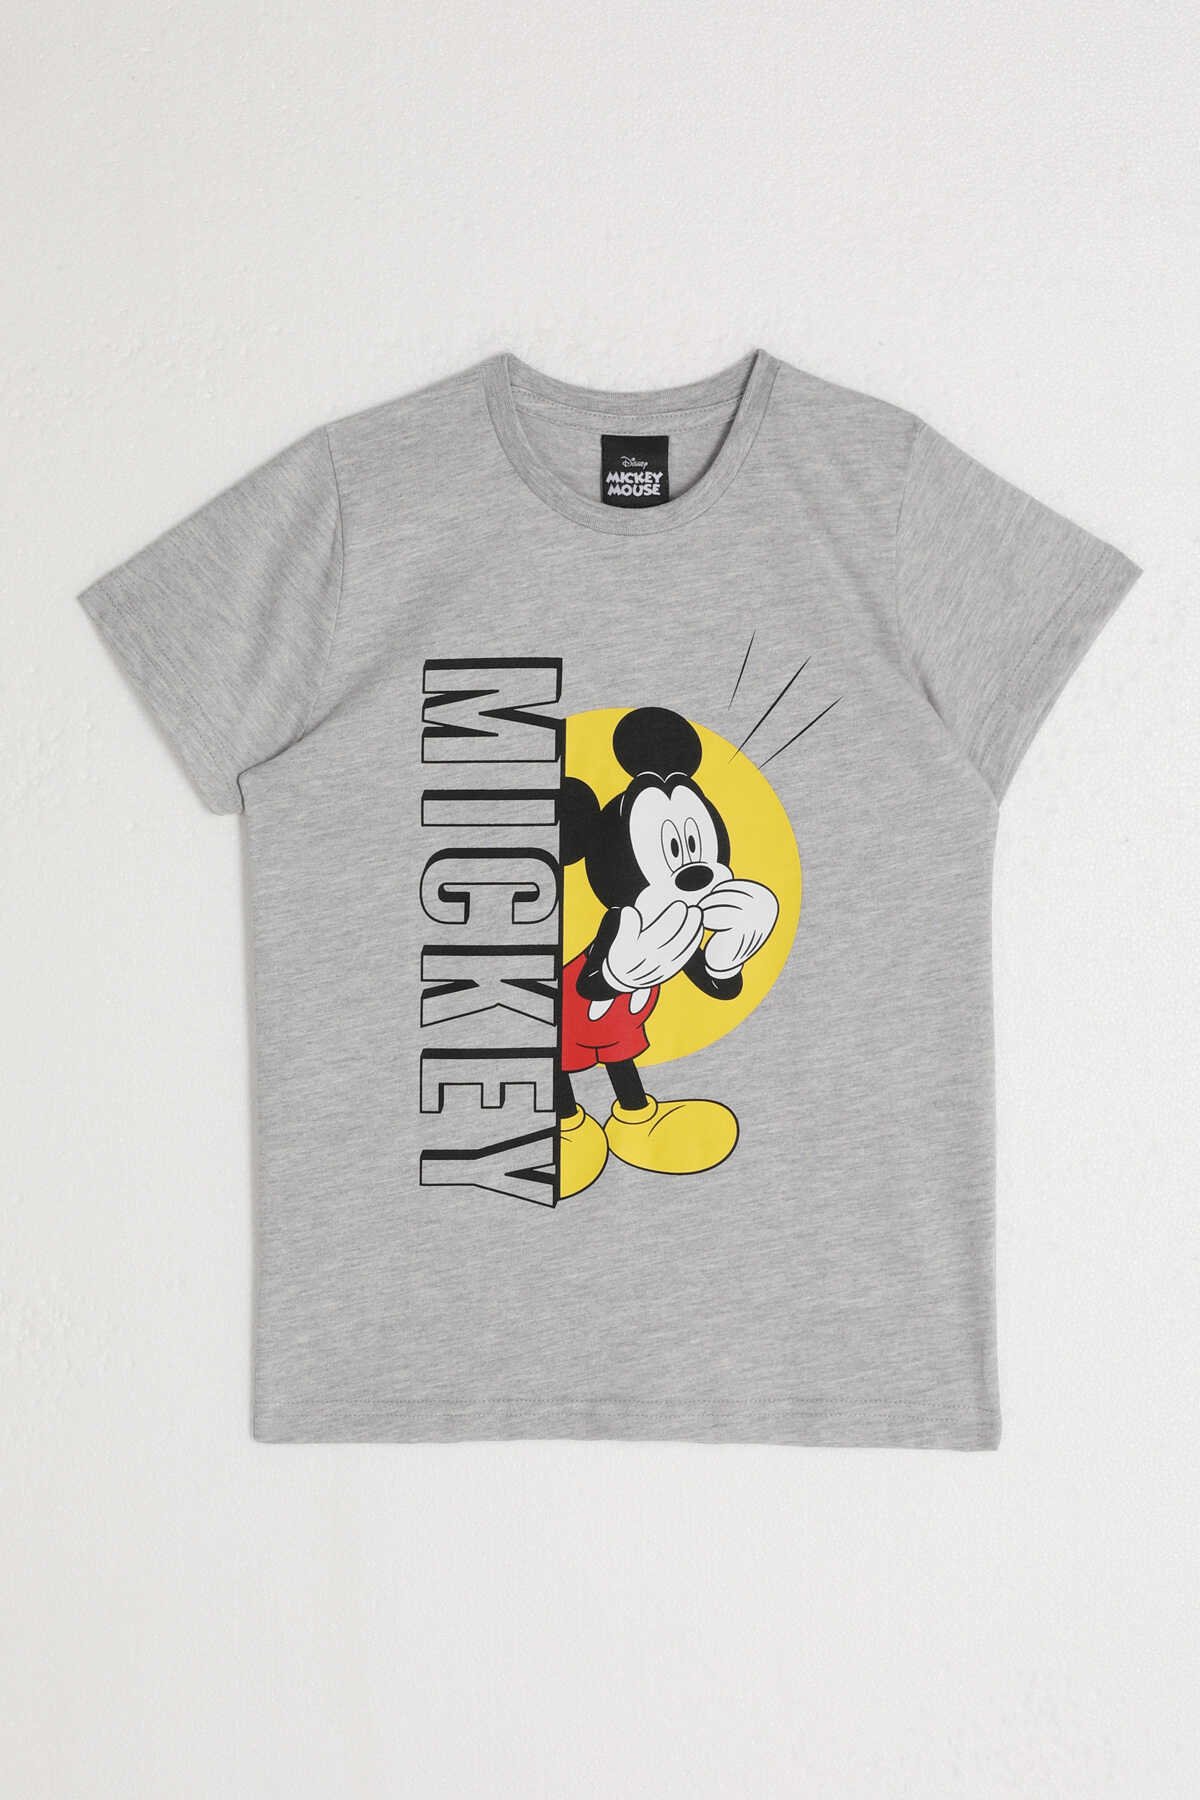 Mickey Mouse - Mickey Mouse D4798-2 Erkek Çocuk T-Shirt Gri Melanj